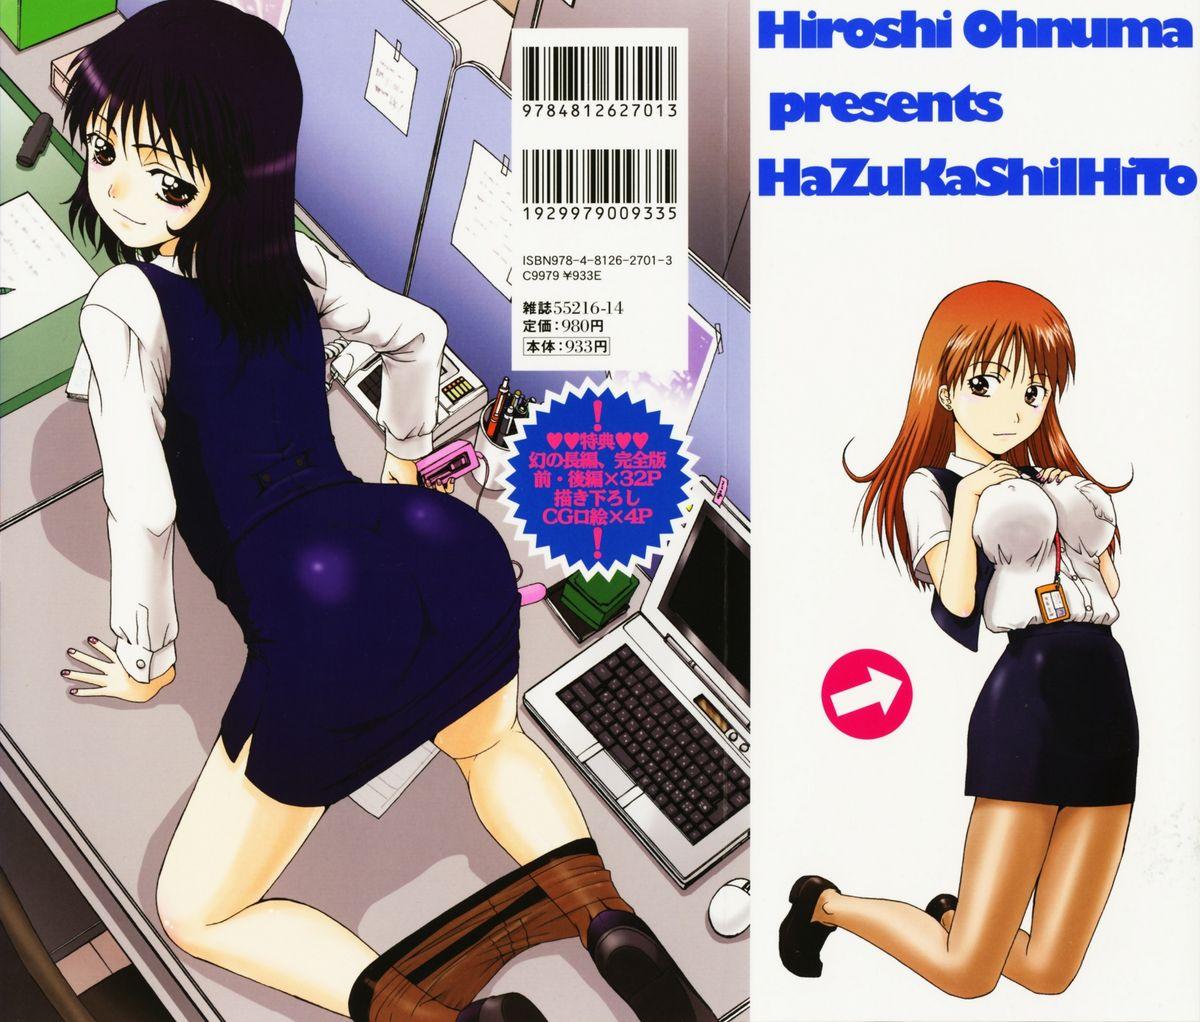 Hazukashii Hito 3